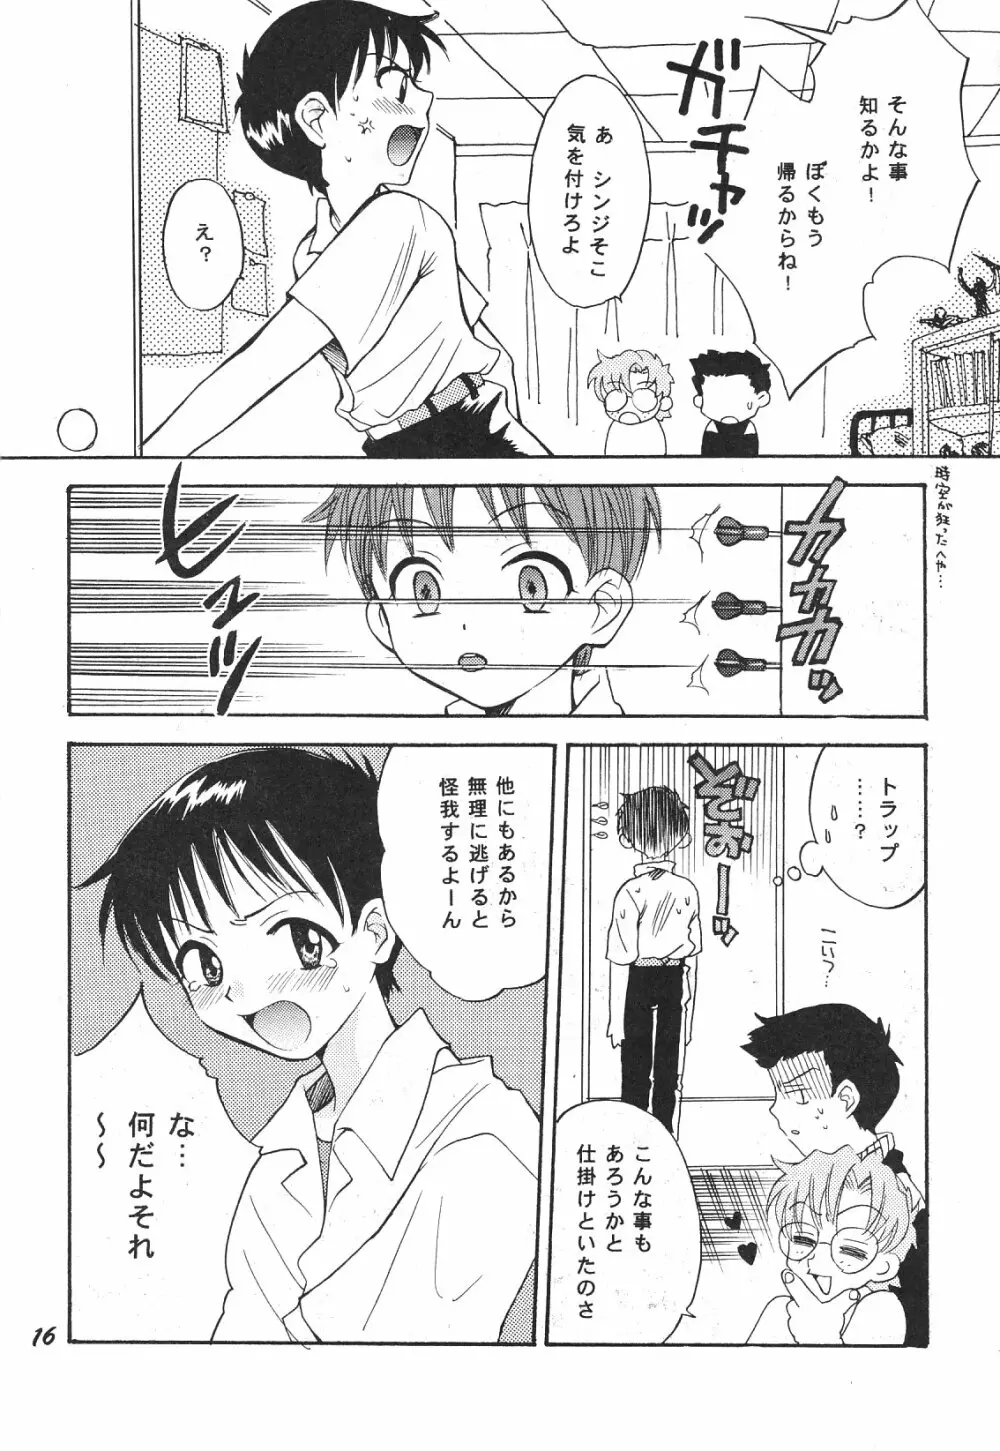 Maniac Juice 女シンジ再録集 ’96-’99 16ページ